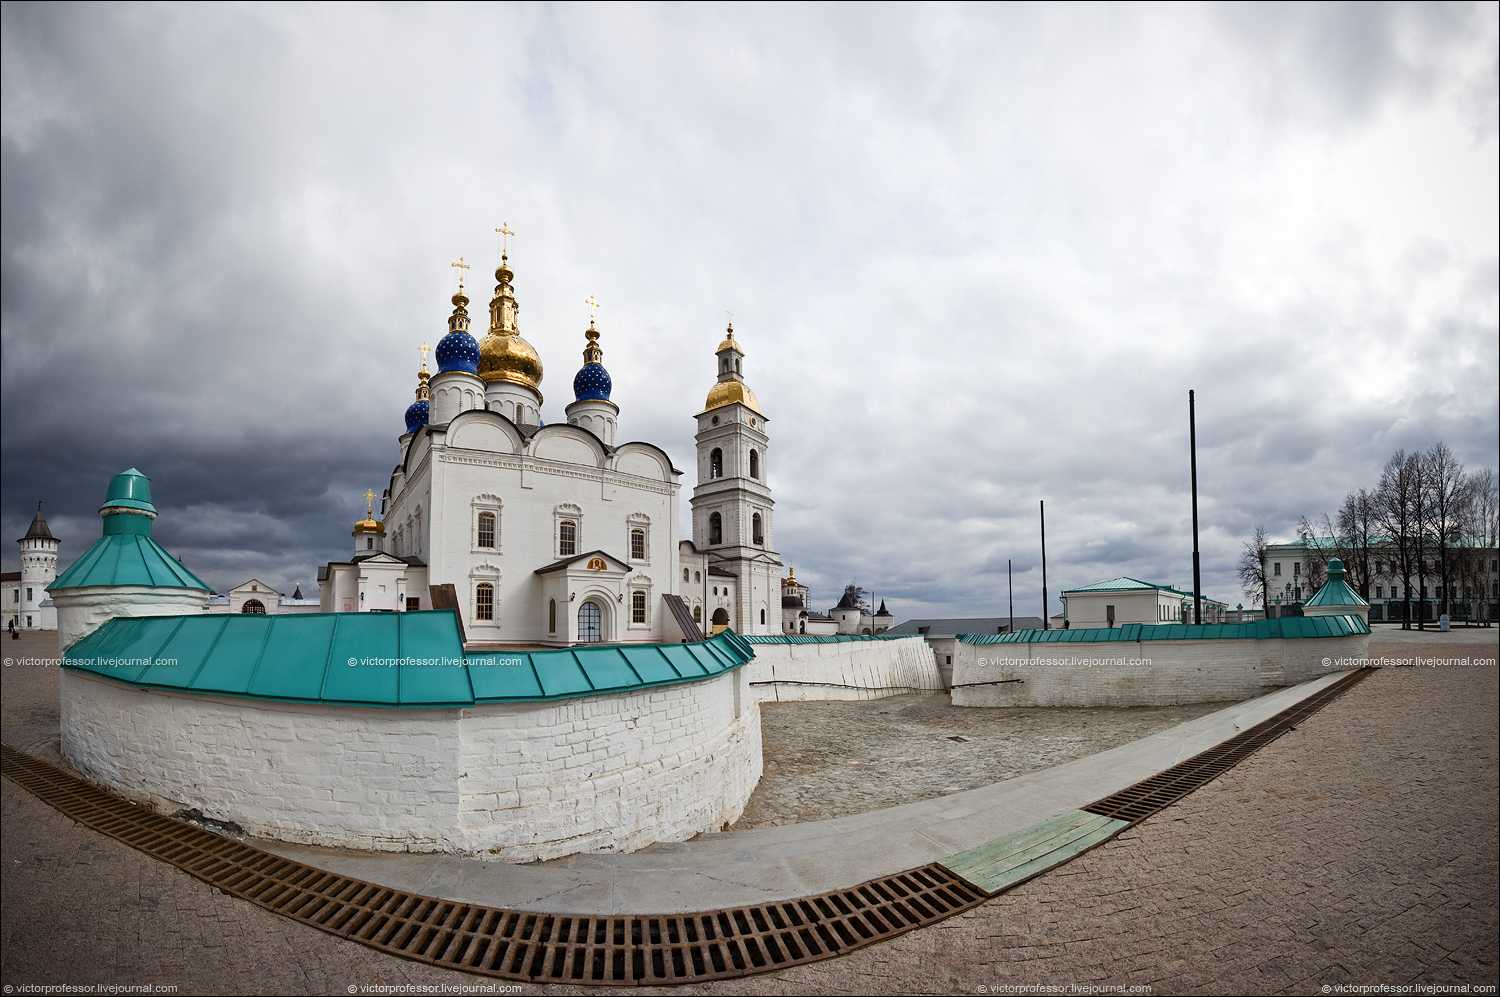 Тобольск: достопримечательности, описание, фото - gkd.ru